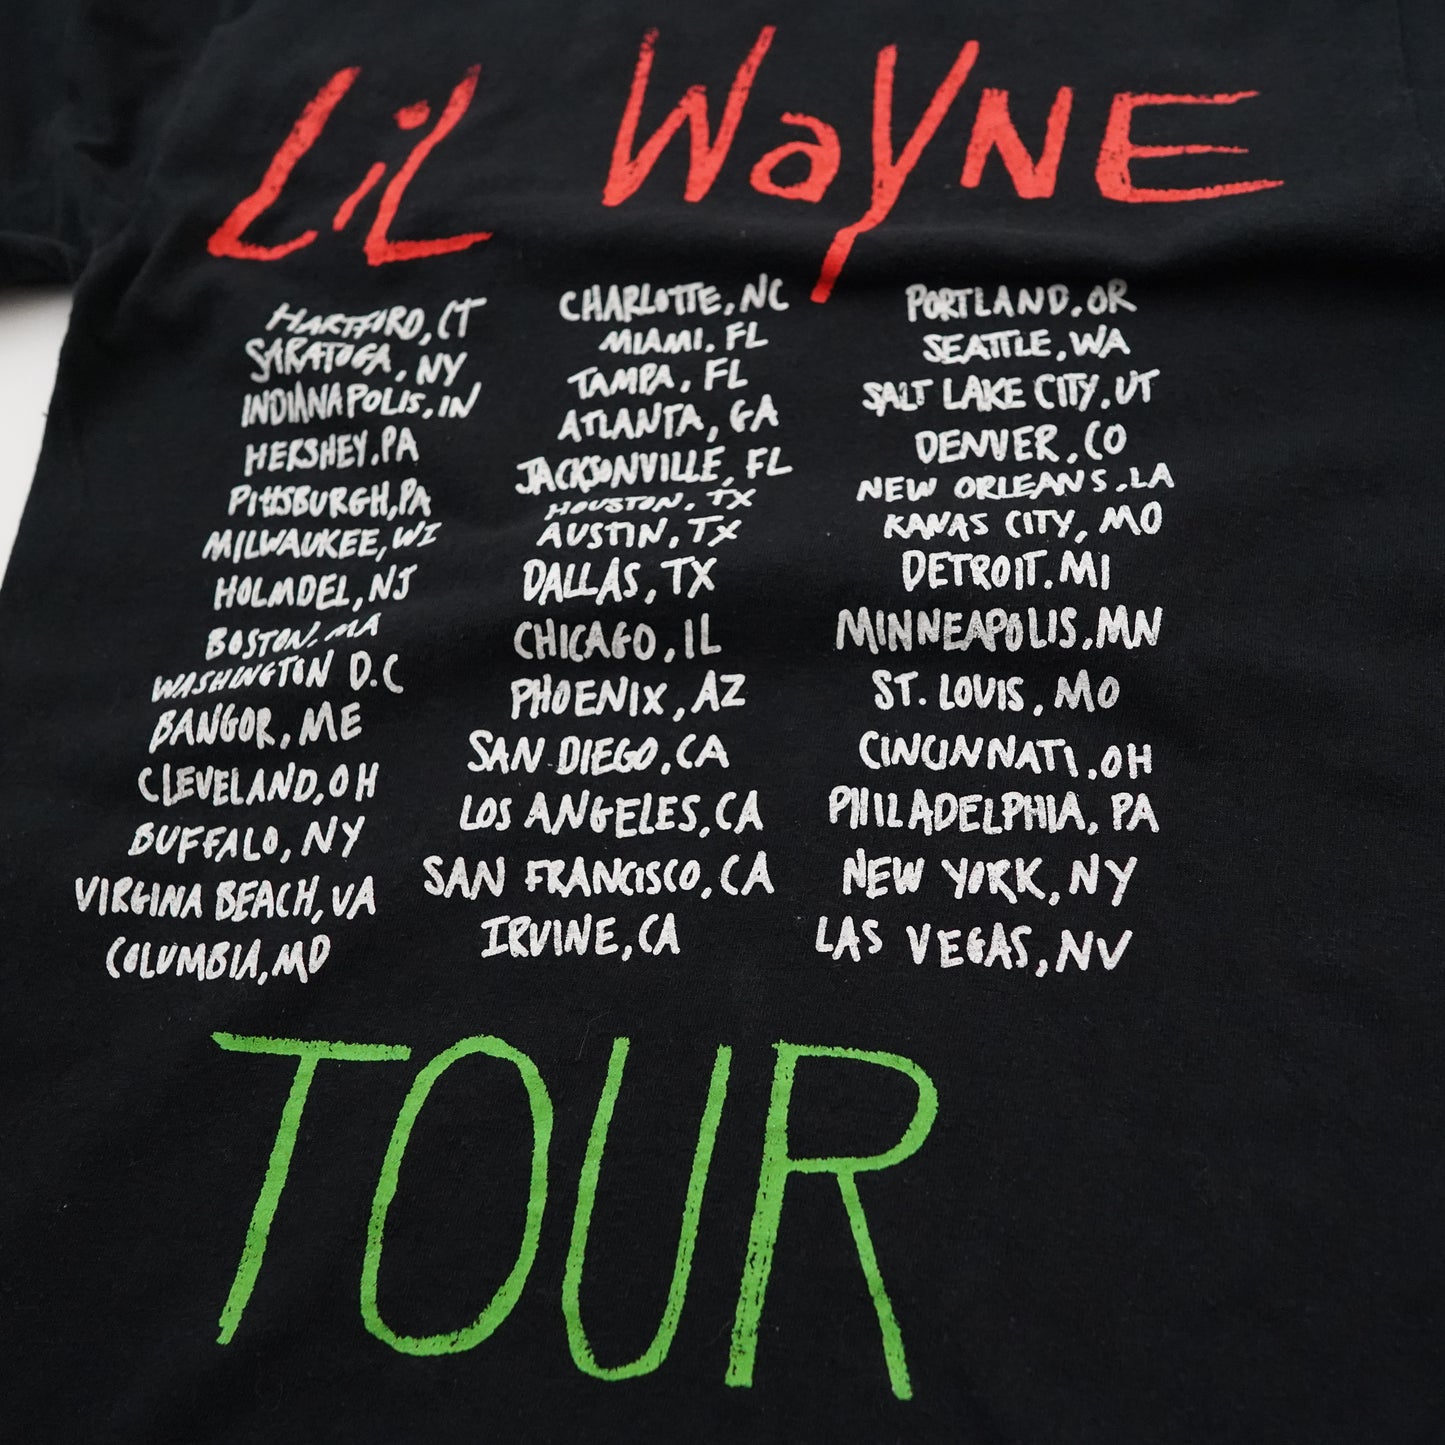 Lil Wayne 2020 tour tee